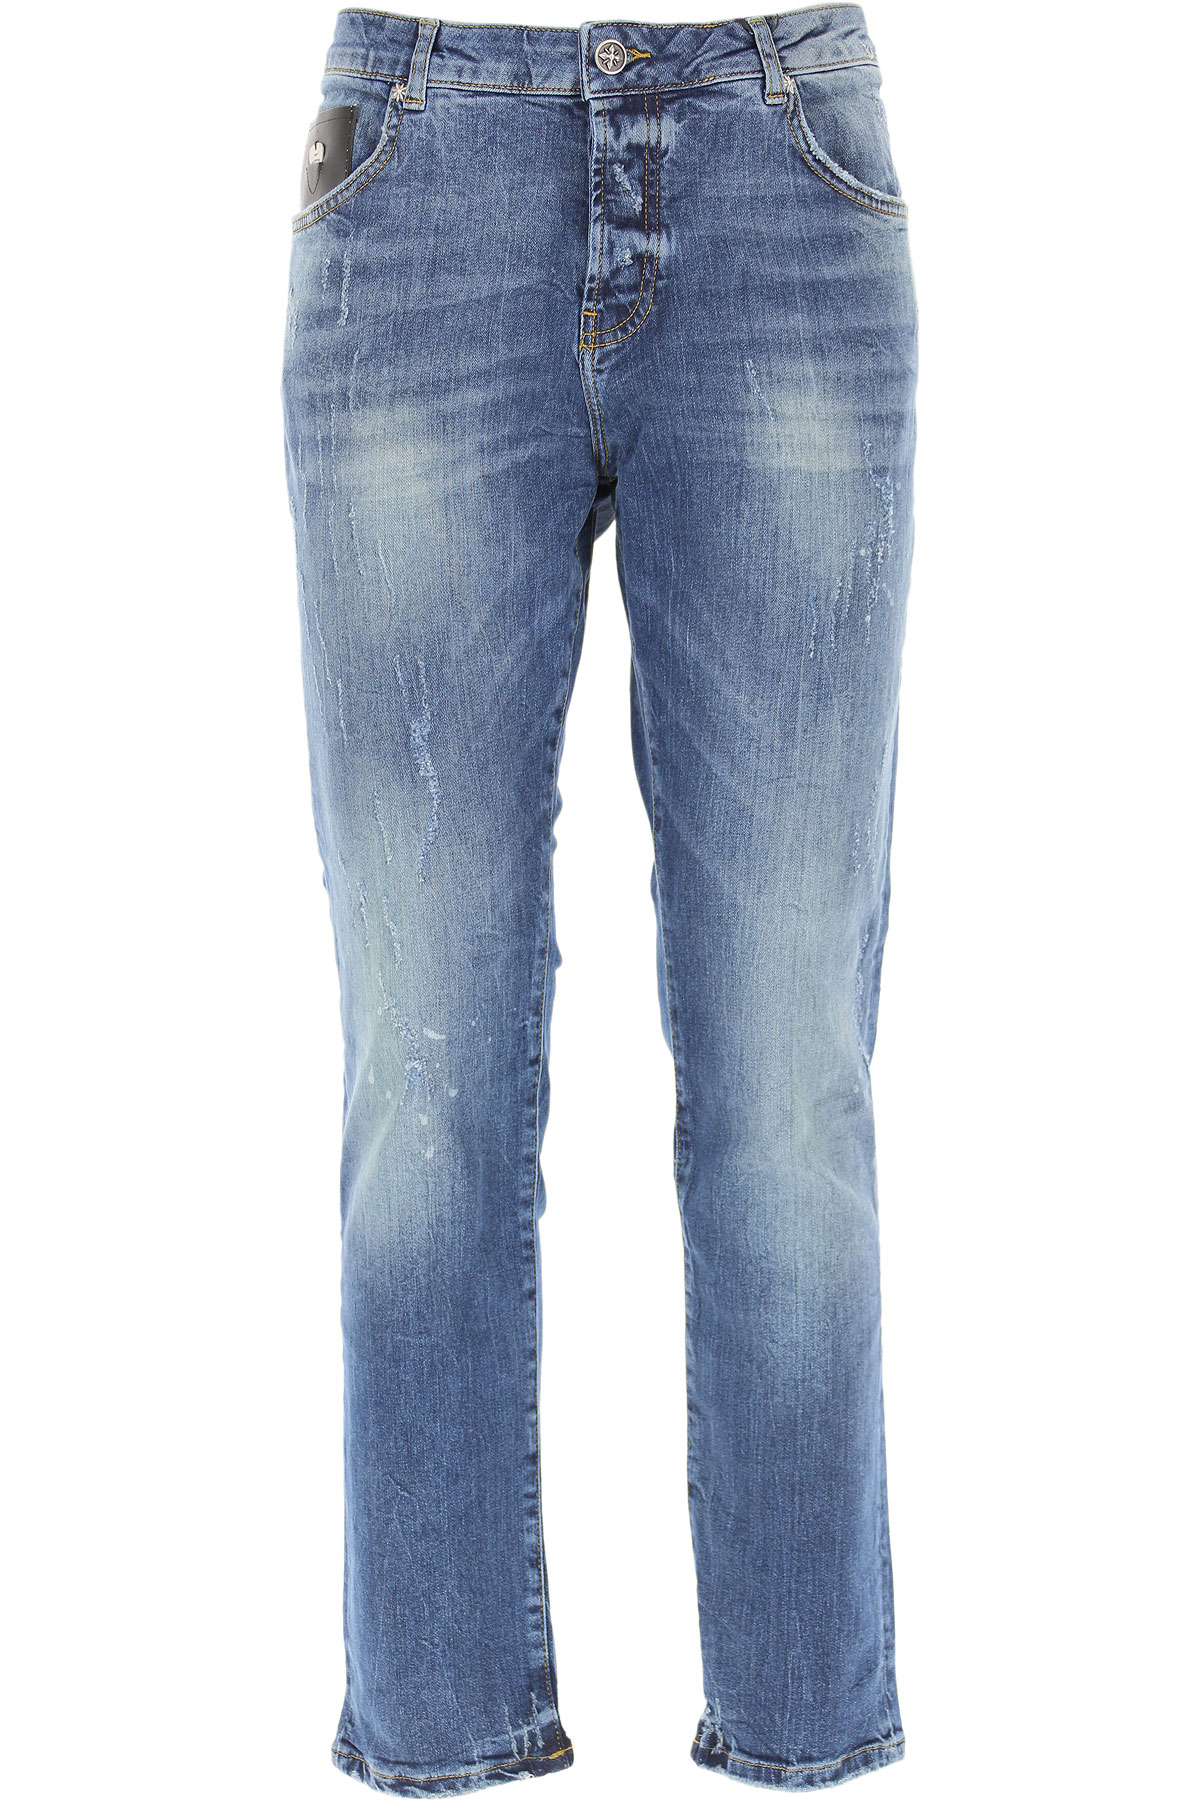 Richmond Jeans, Bluejeans, Denim Jeans für Herren Günstig im Sale, Denim- Blau, Baumwolle, 2017, 46 48 50 52